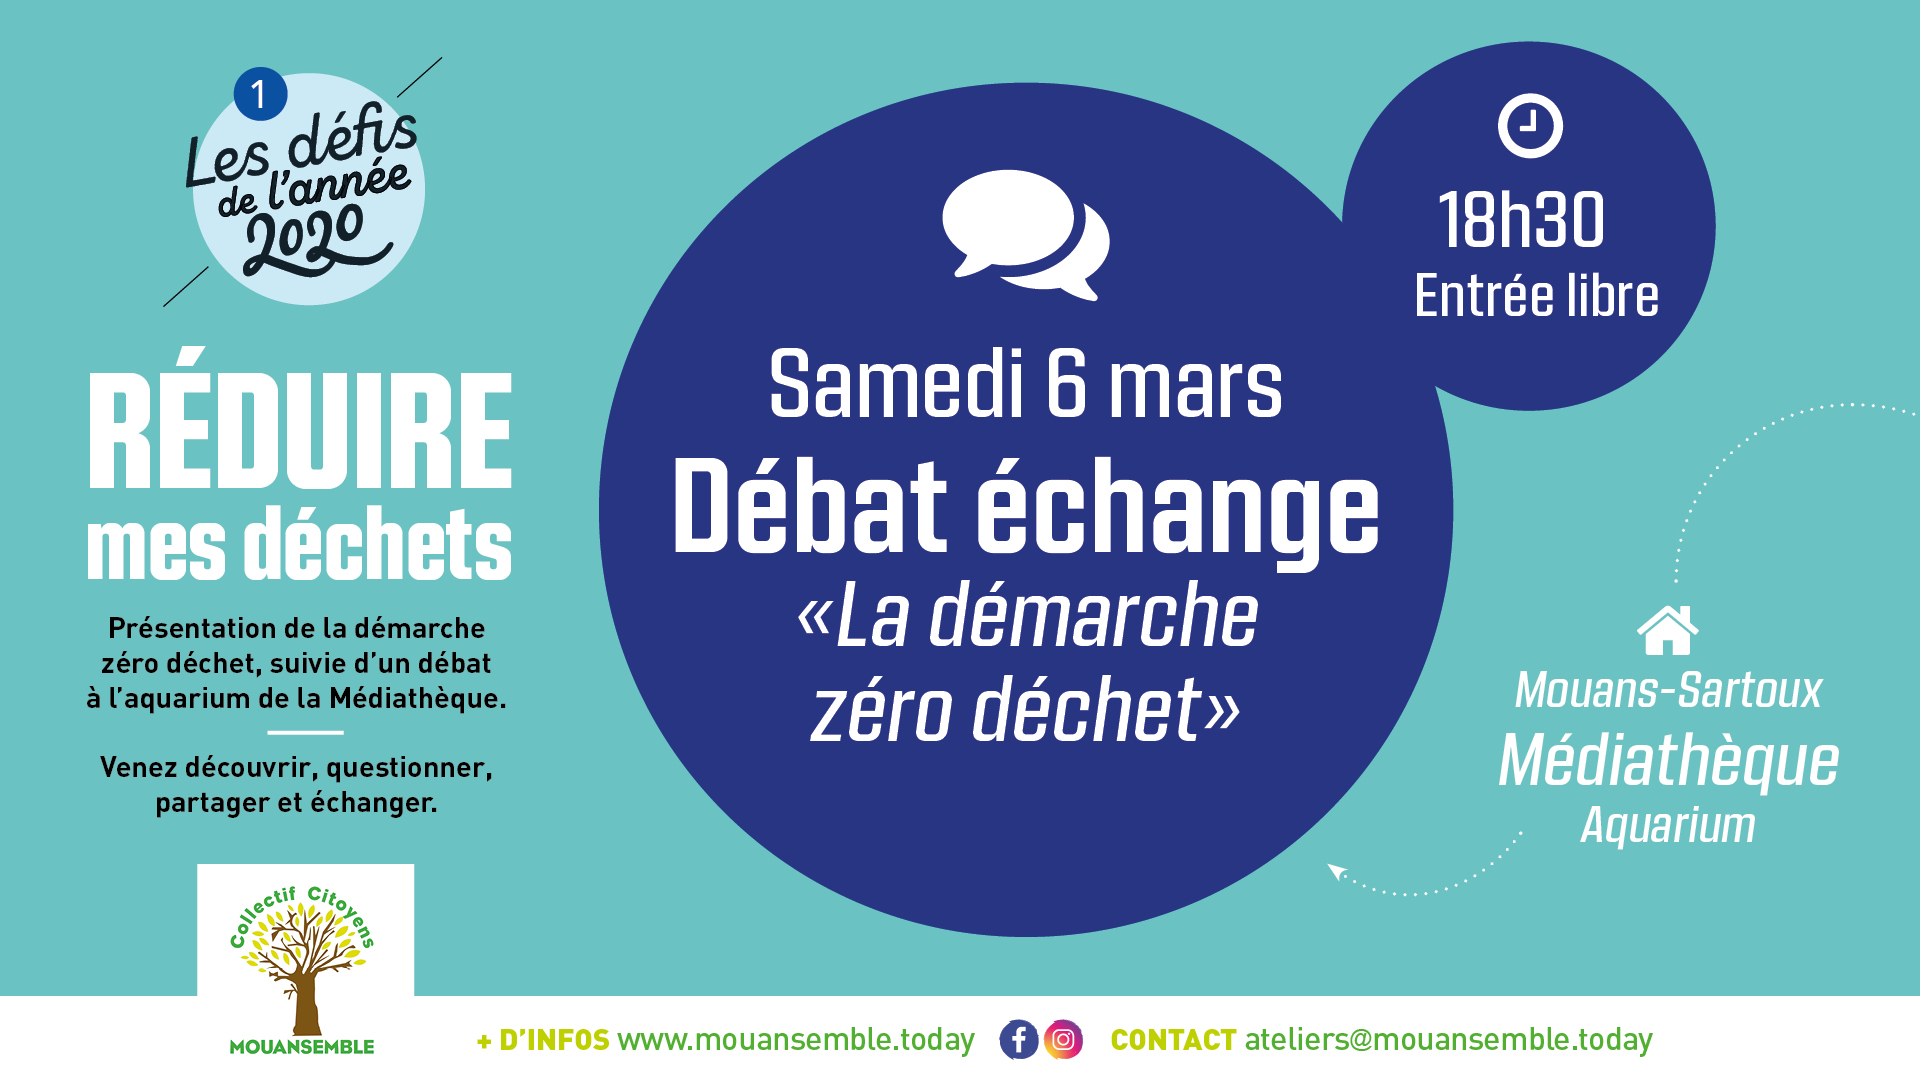 Débat échange « La démarche zéro déchet » le 6 mars 2020 à 18h30